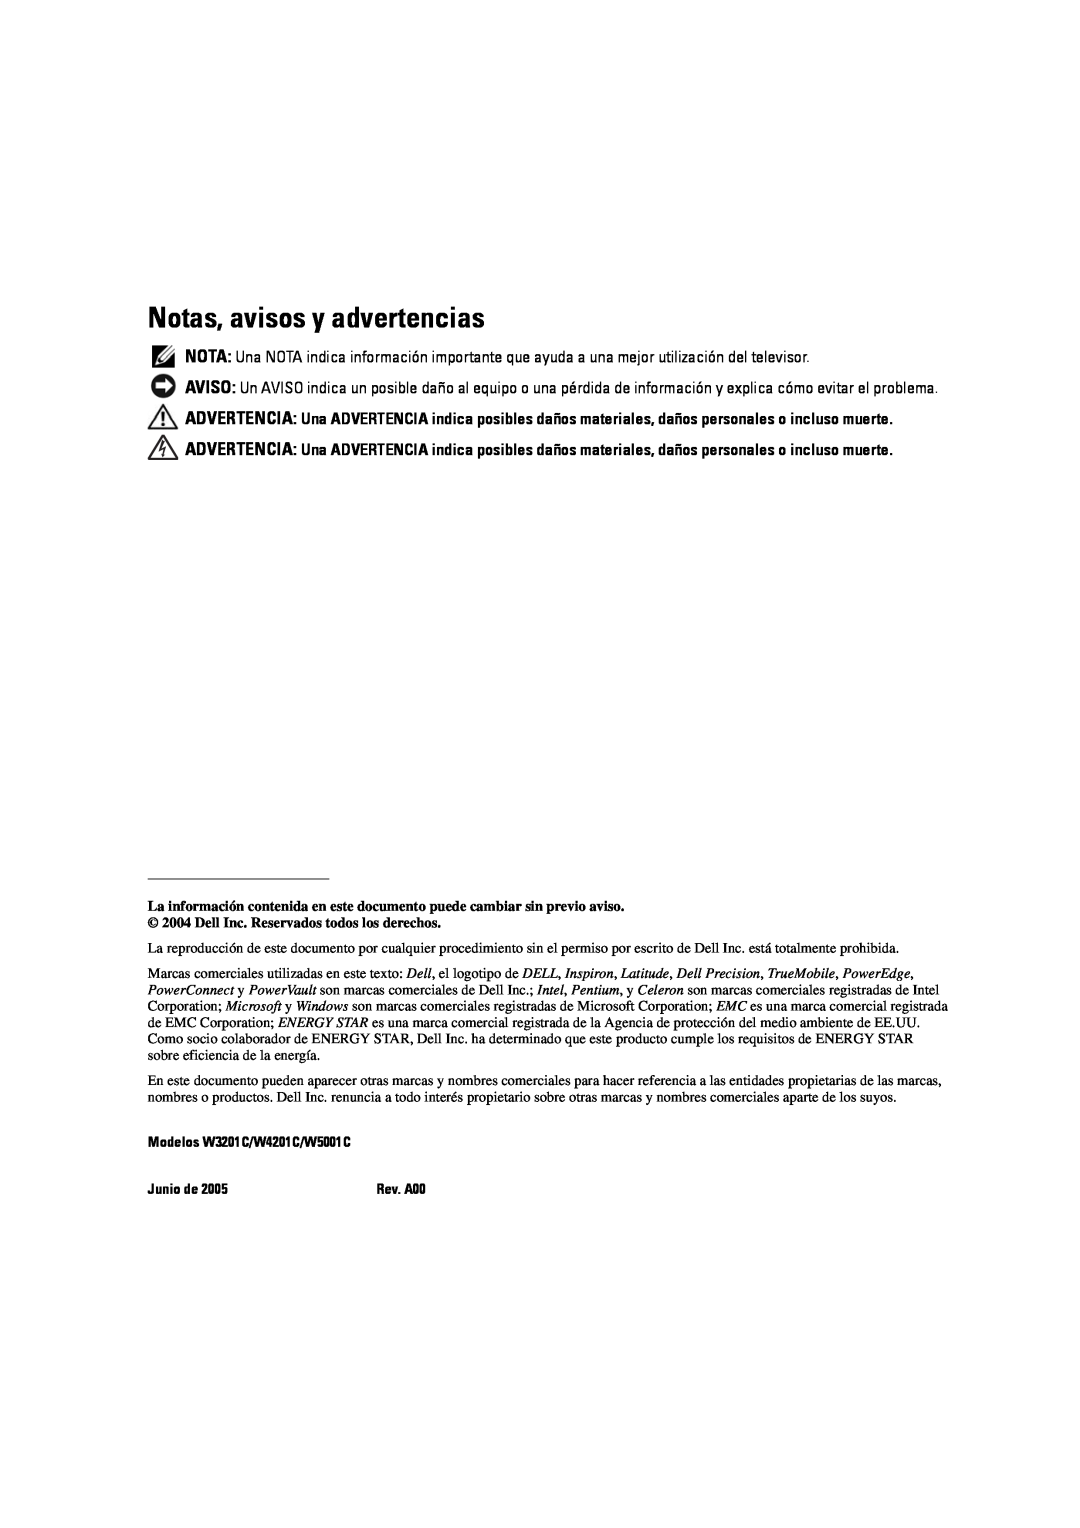 Dell manual Notas, avisos y advertencias, Modelos W3201C/W4201C/W5001C, Junio de 